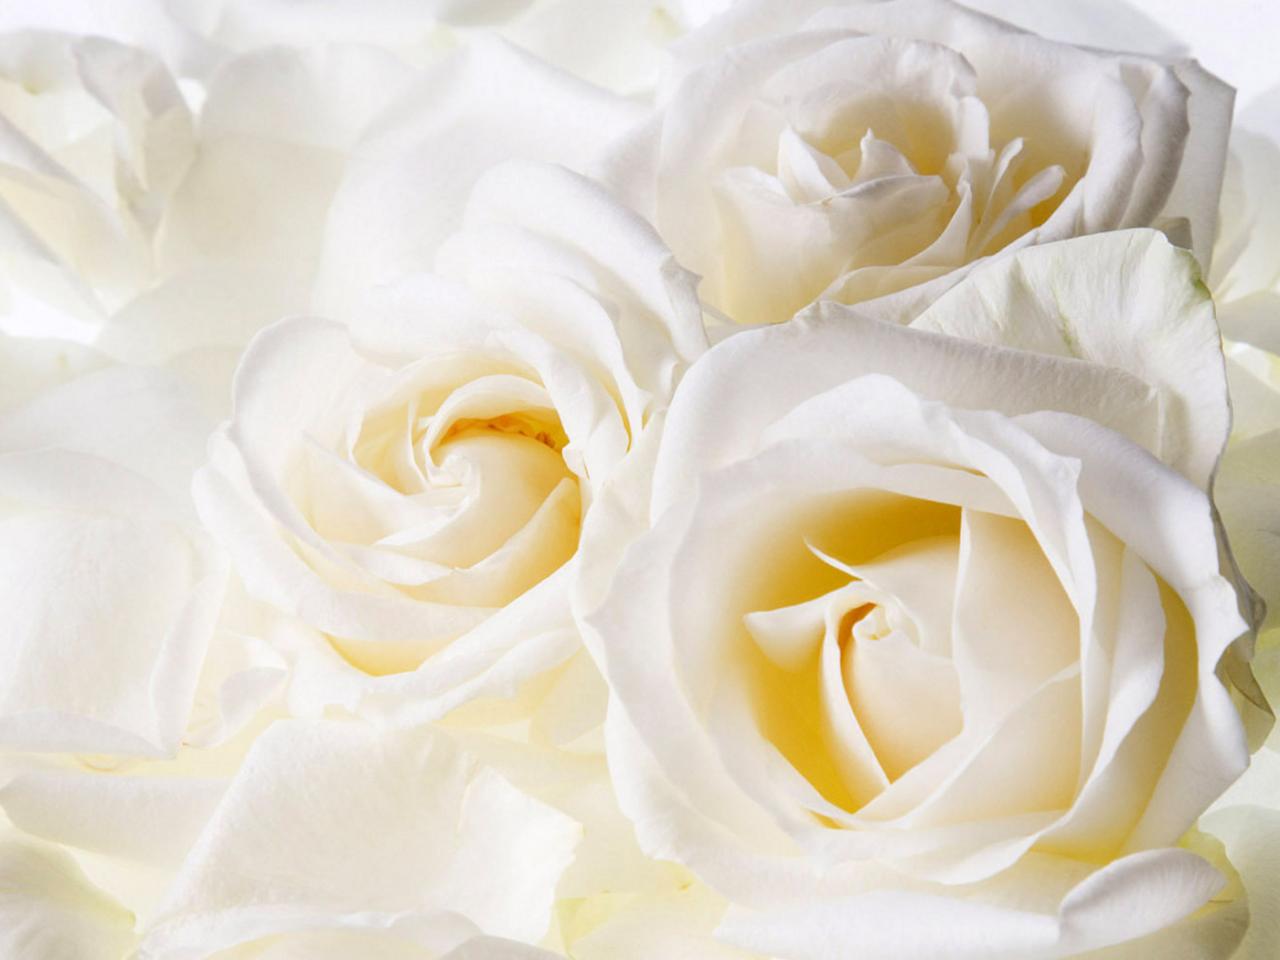 обои Красивые белые розы фото